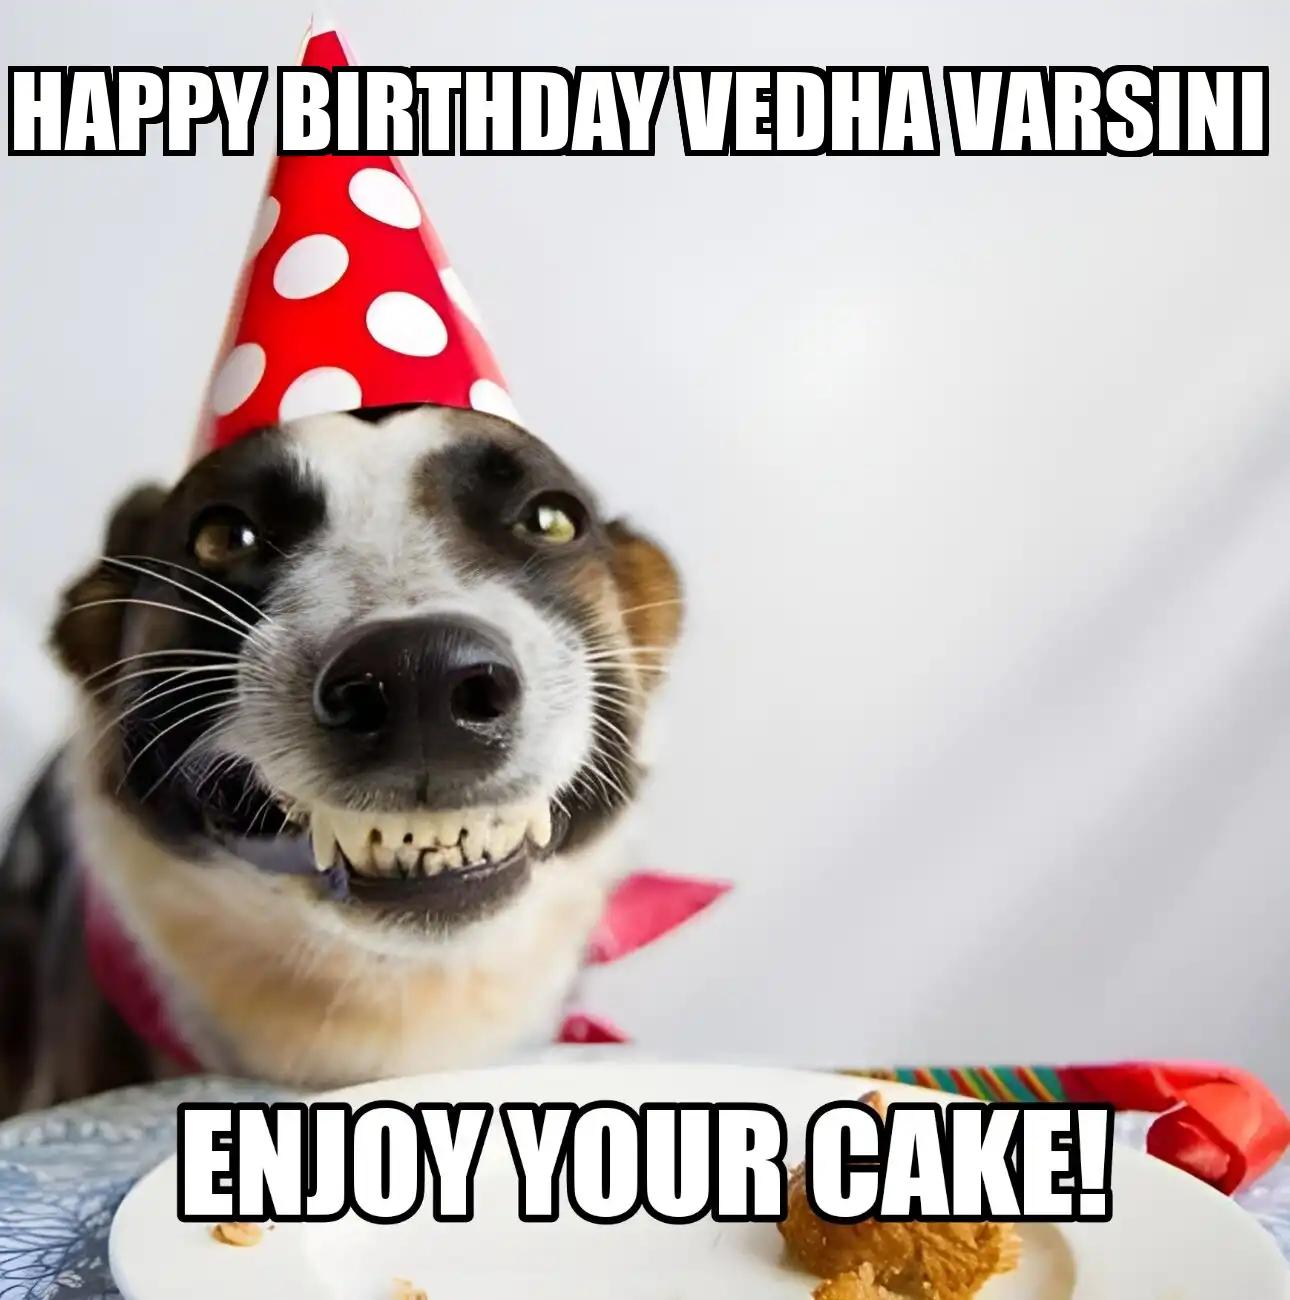 Happy Birthday Vedha varsini Enjoy Your Cake Dog Meme